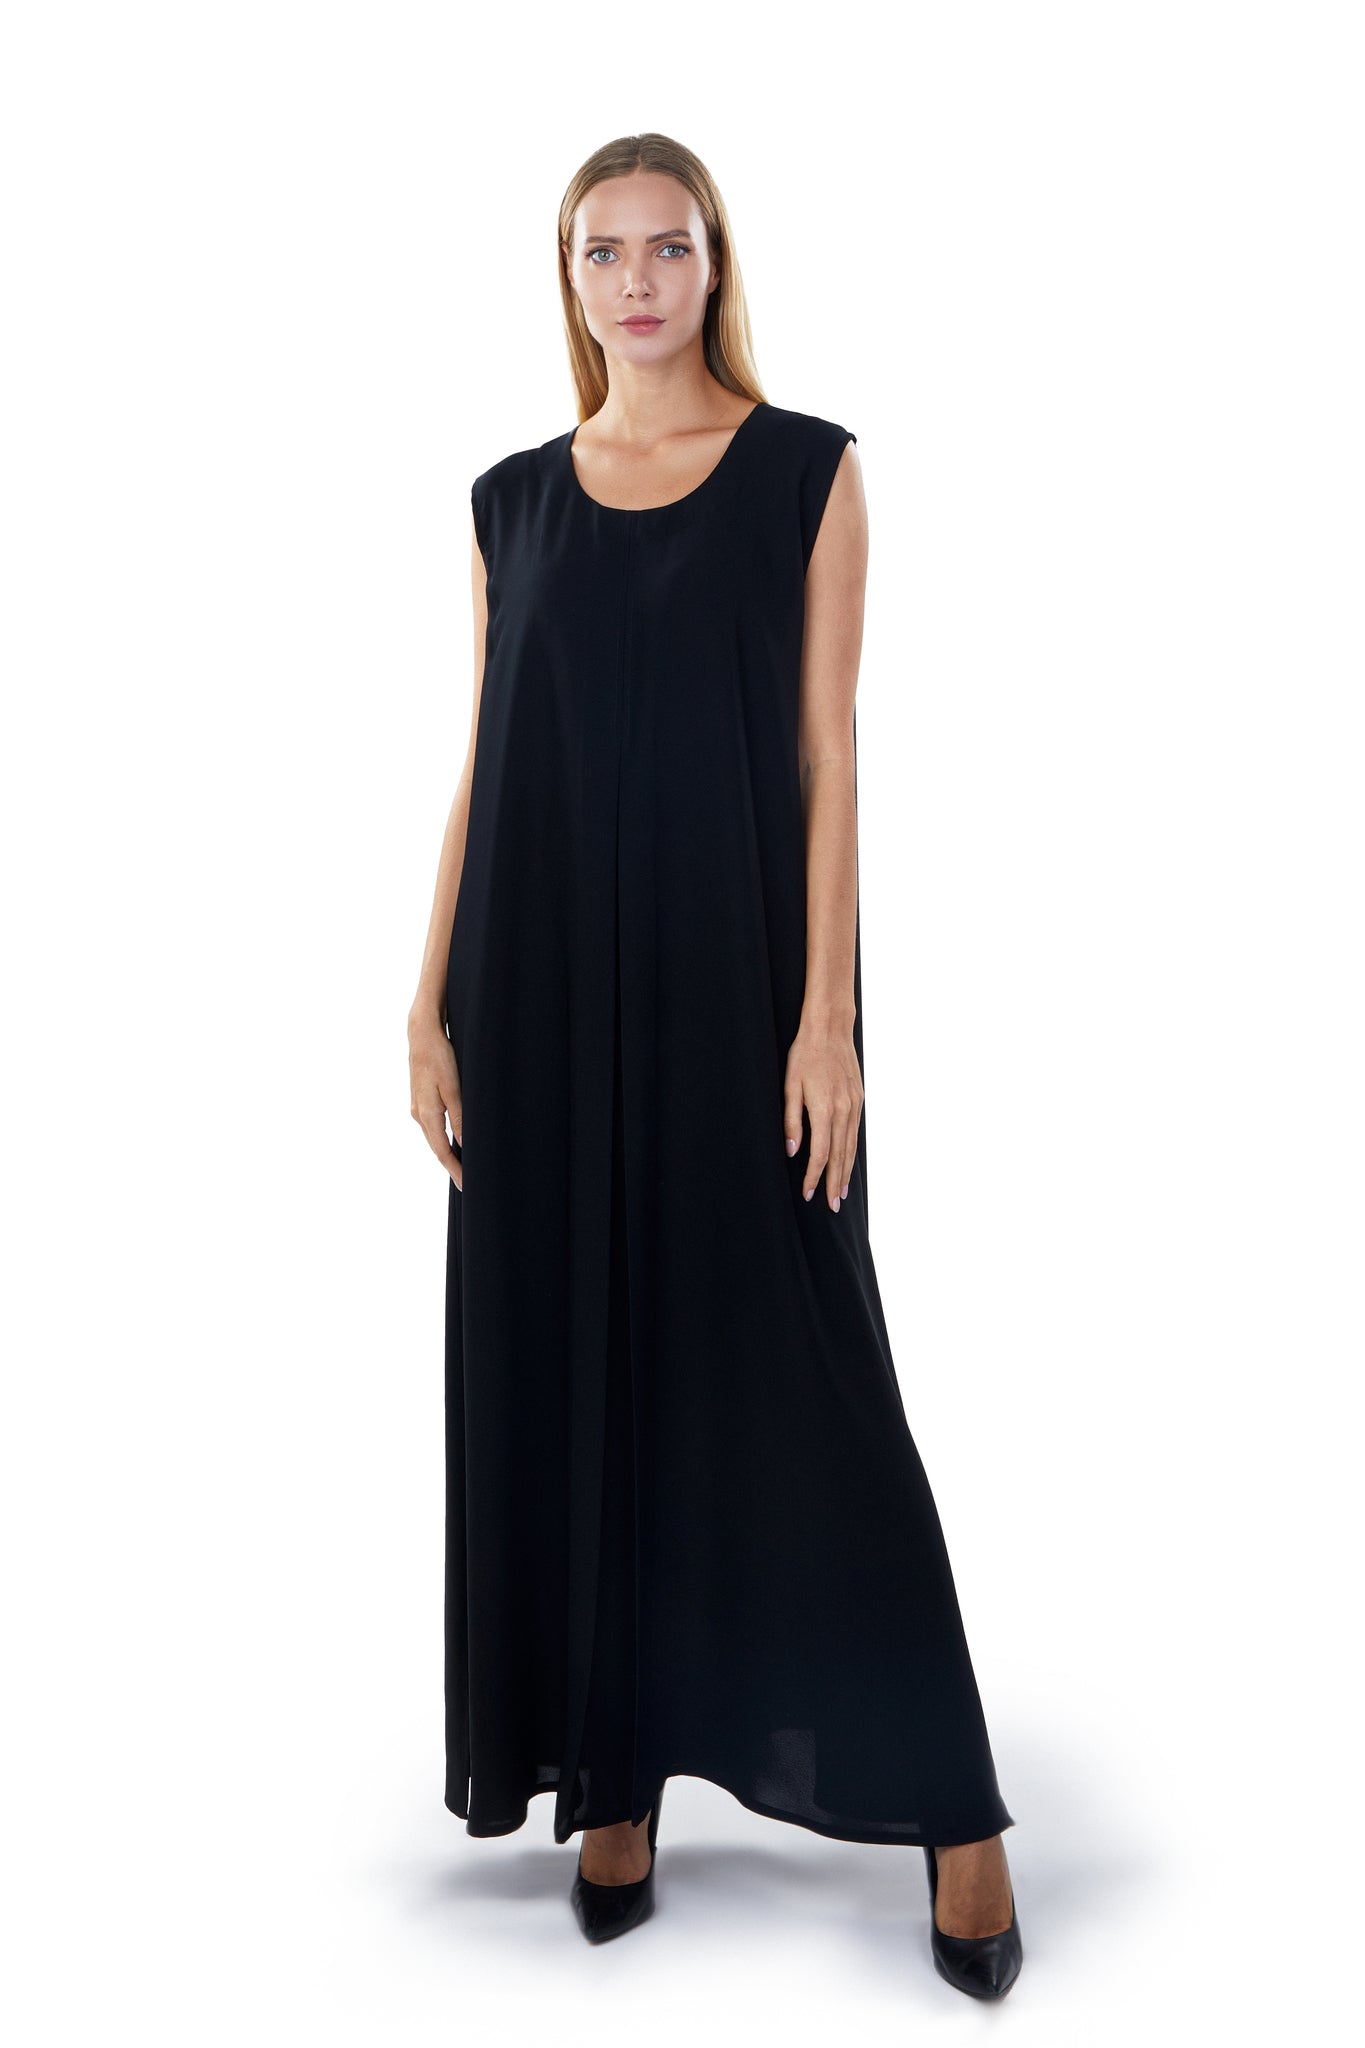 Stylish Abayas for Women in UAE | Buy Luxury Abayas Online Hanayen